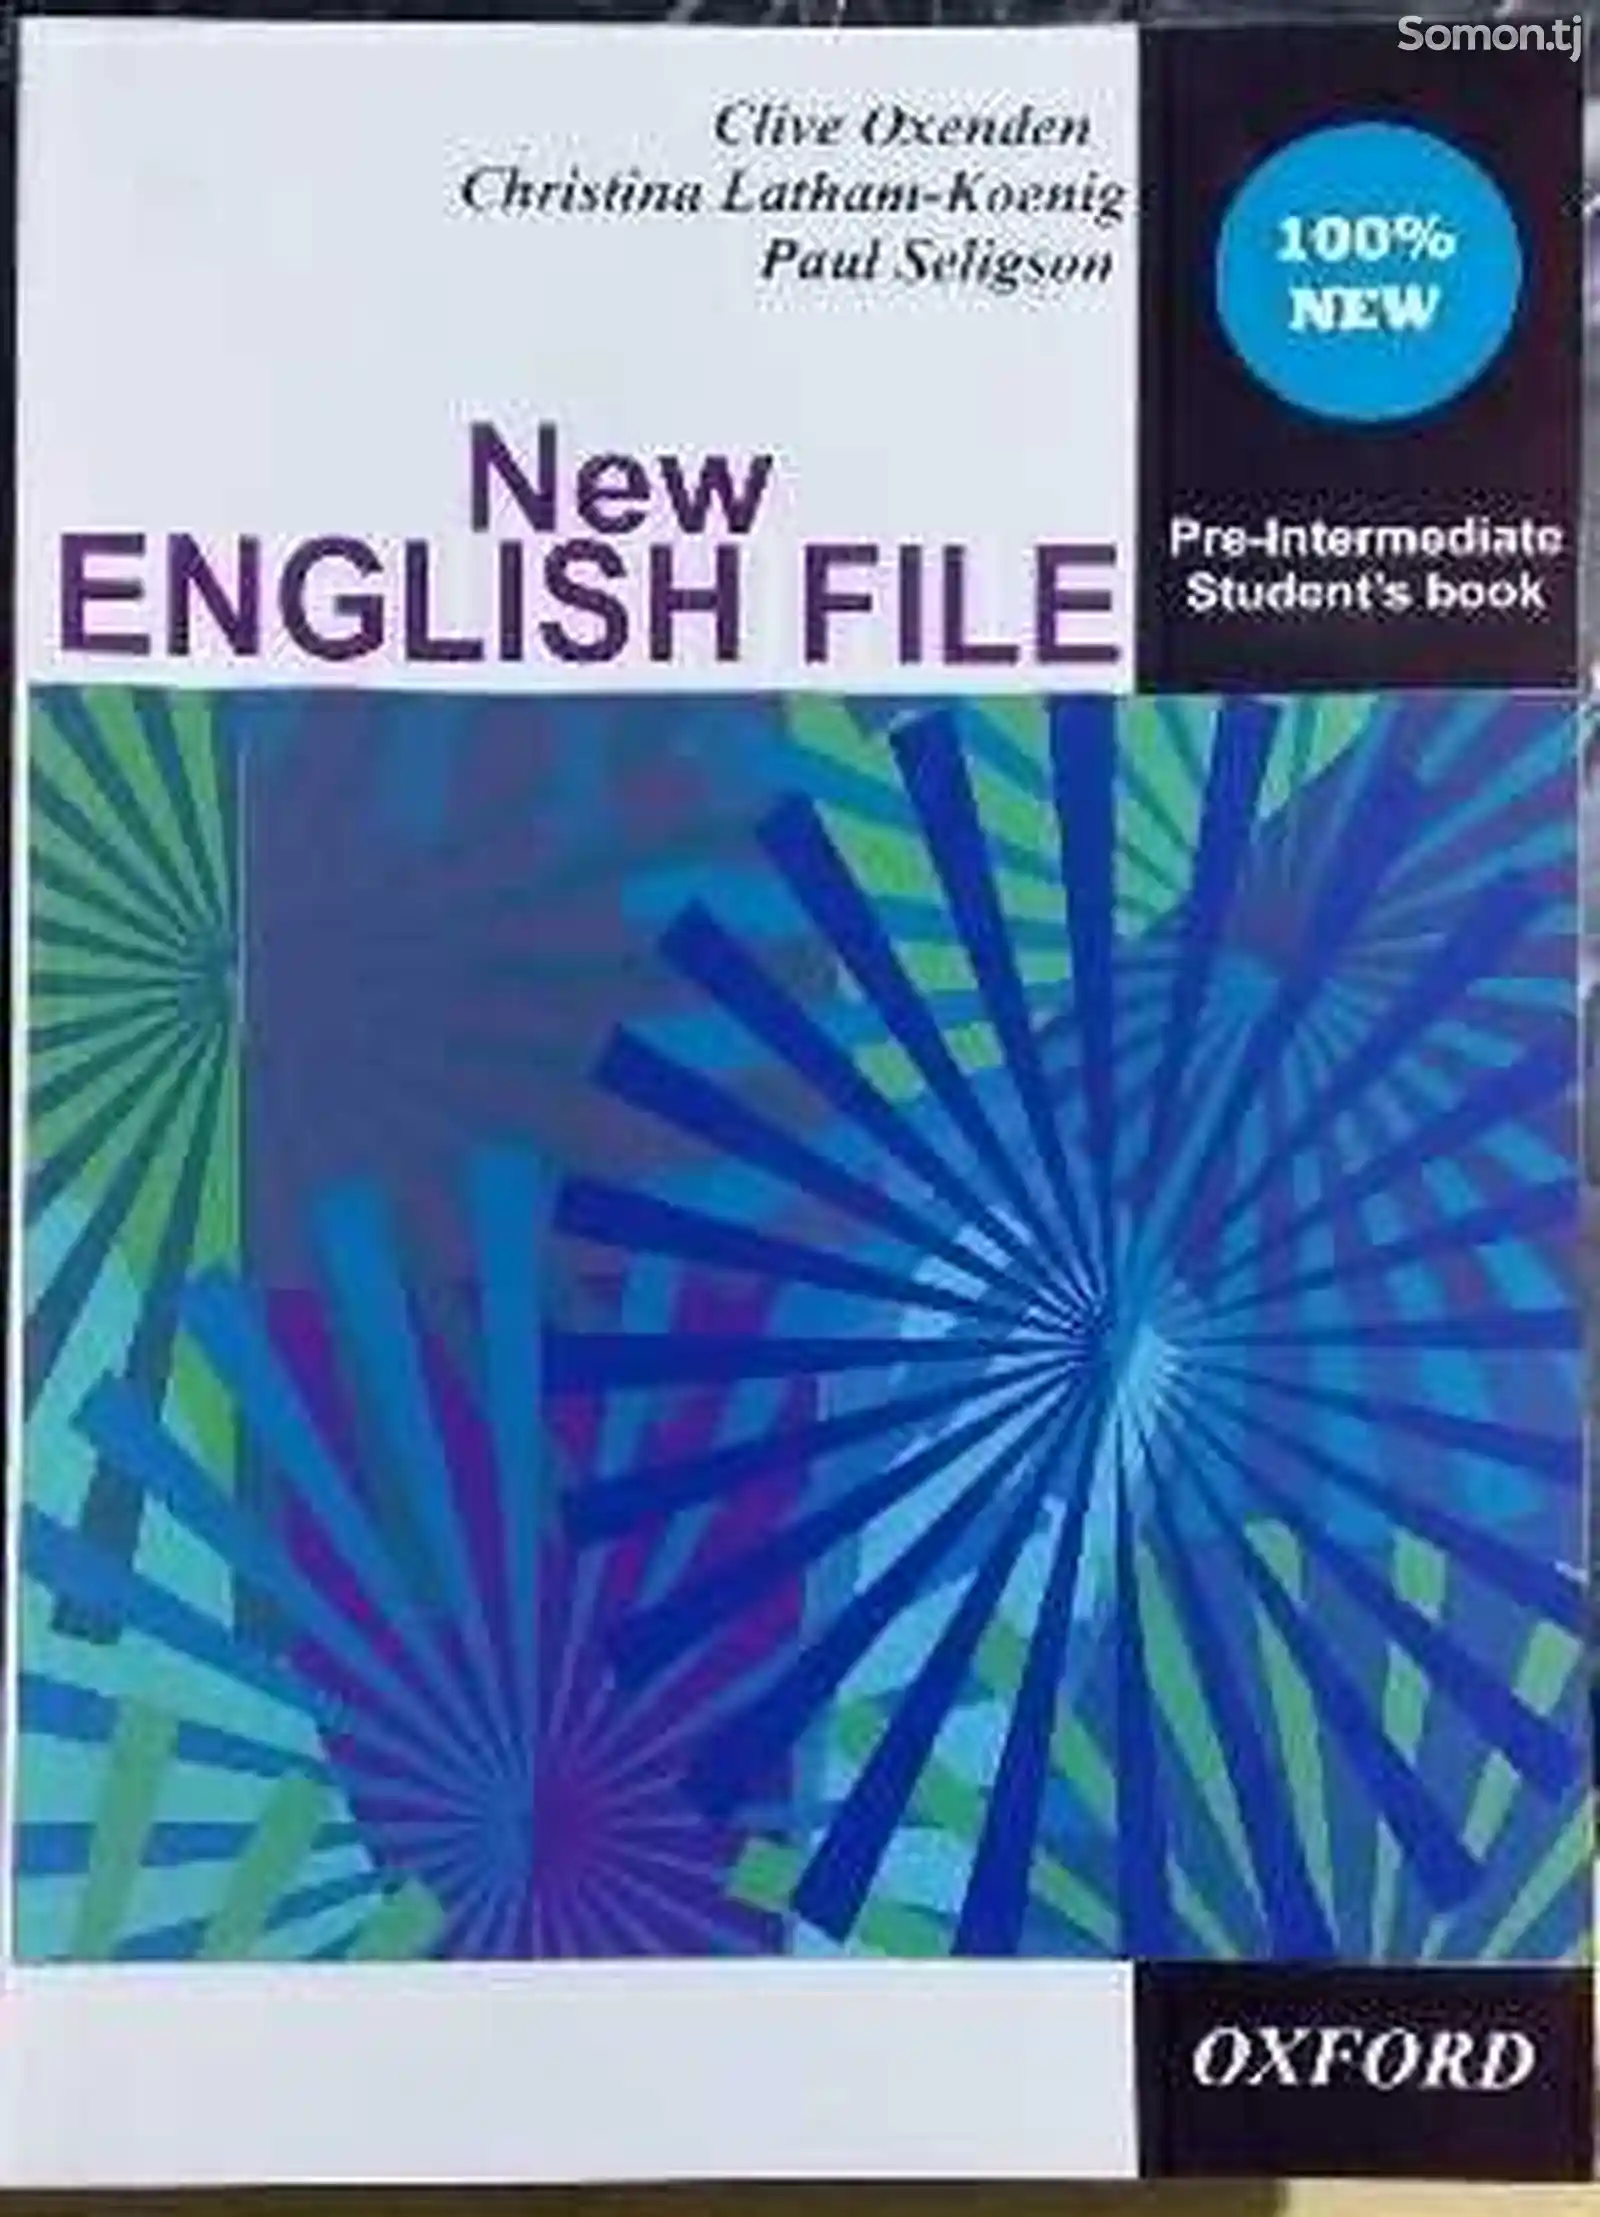 English FILE pre-intermediate